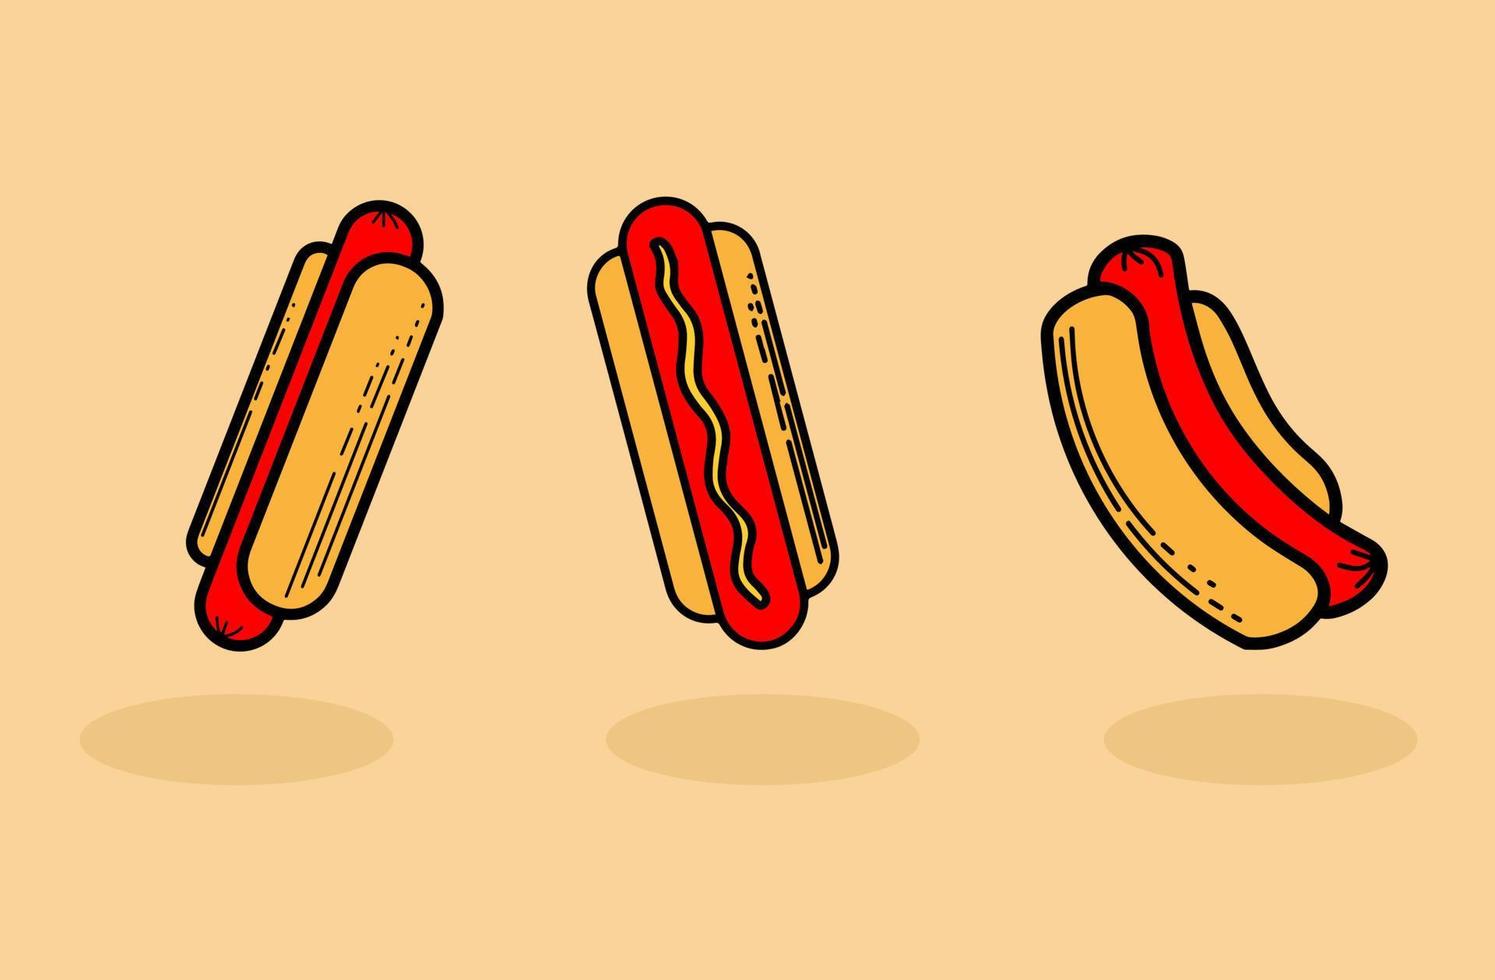 illustrazioni di hot dog dell'albero vettore